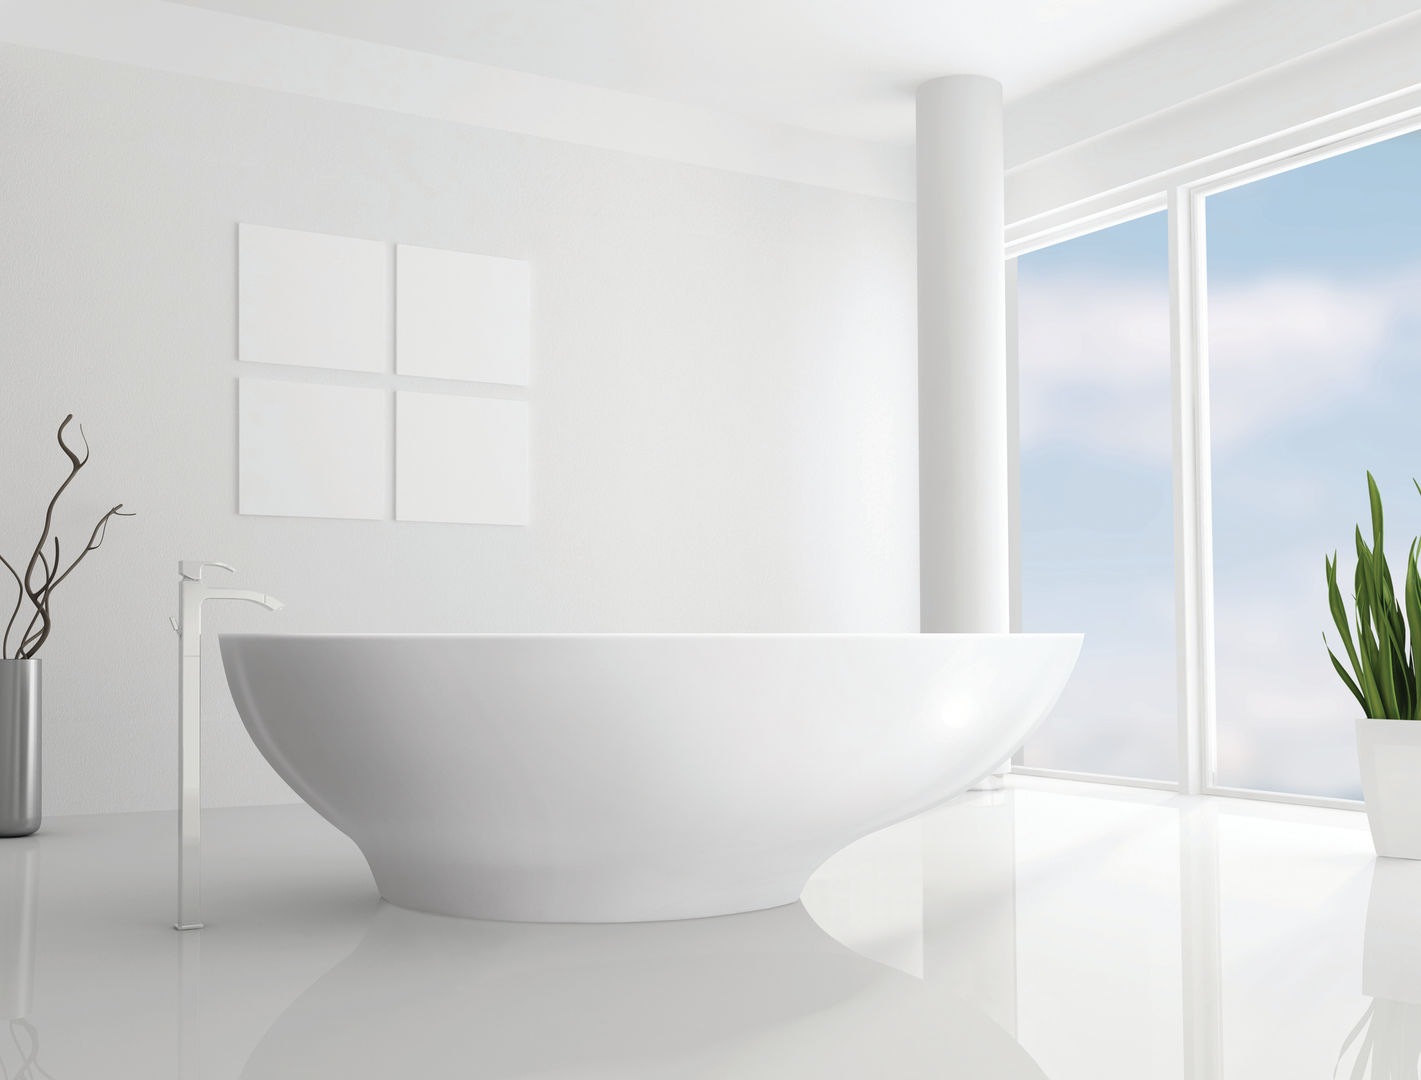 Gio Bath BC Designs Ванная комната в стиле минимализм Ванны и душевые